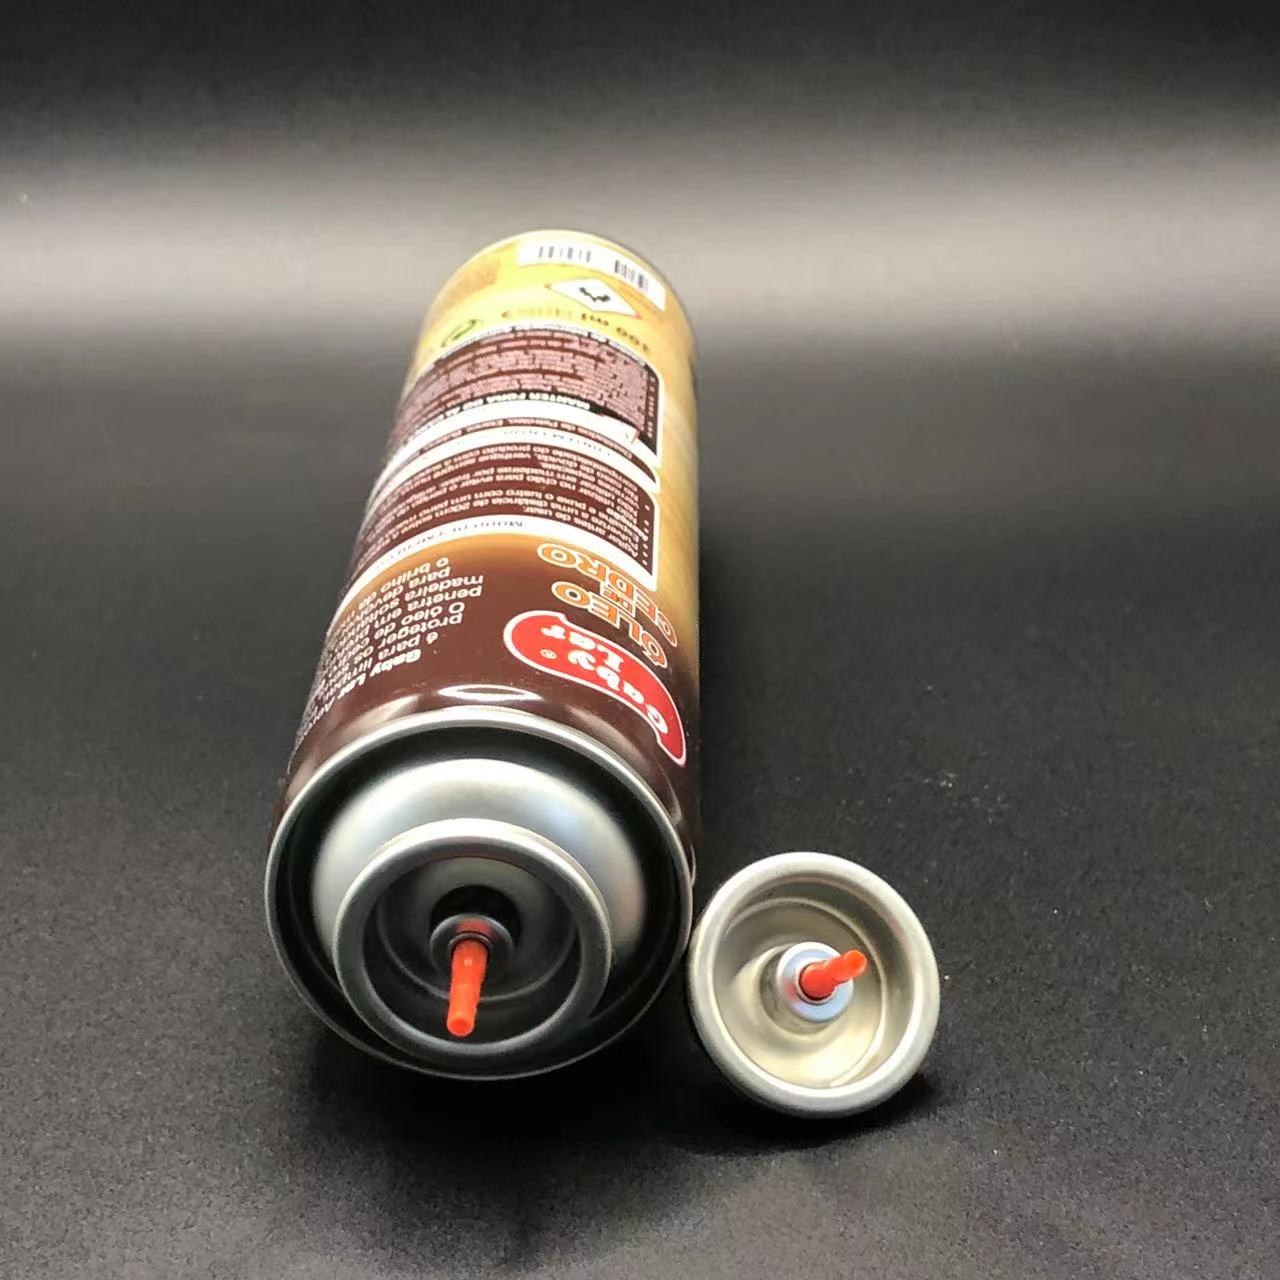 Universal Butan Gas Lighter Refill Valve Kit Villsäiteg Léisung fir Multiple Heller Modeller